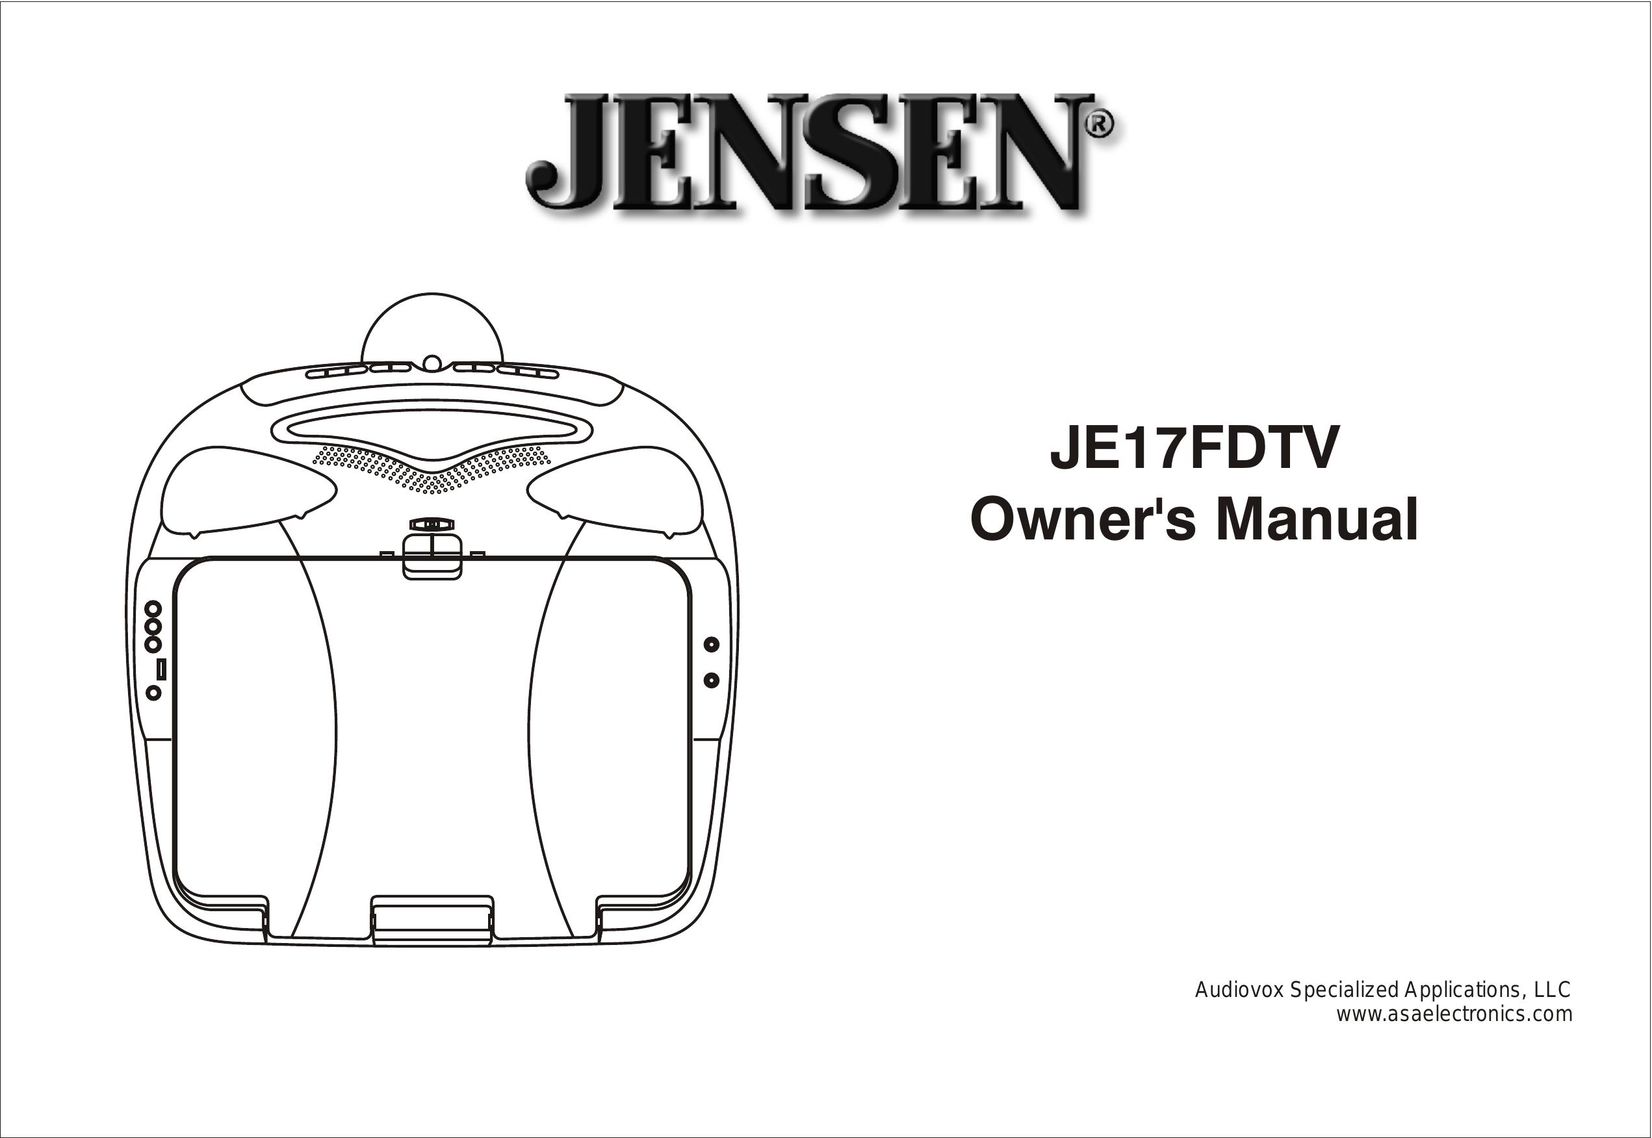 Audiovox Jensen JE17FDTV DVD Player User Manual